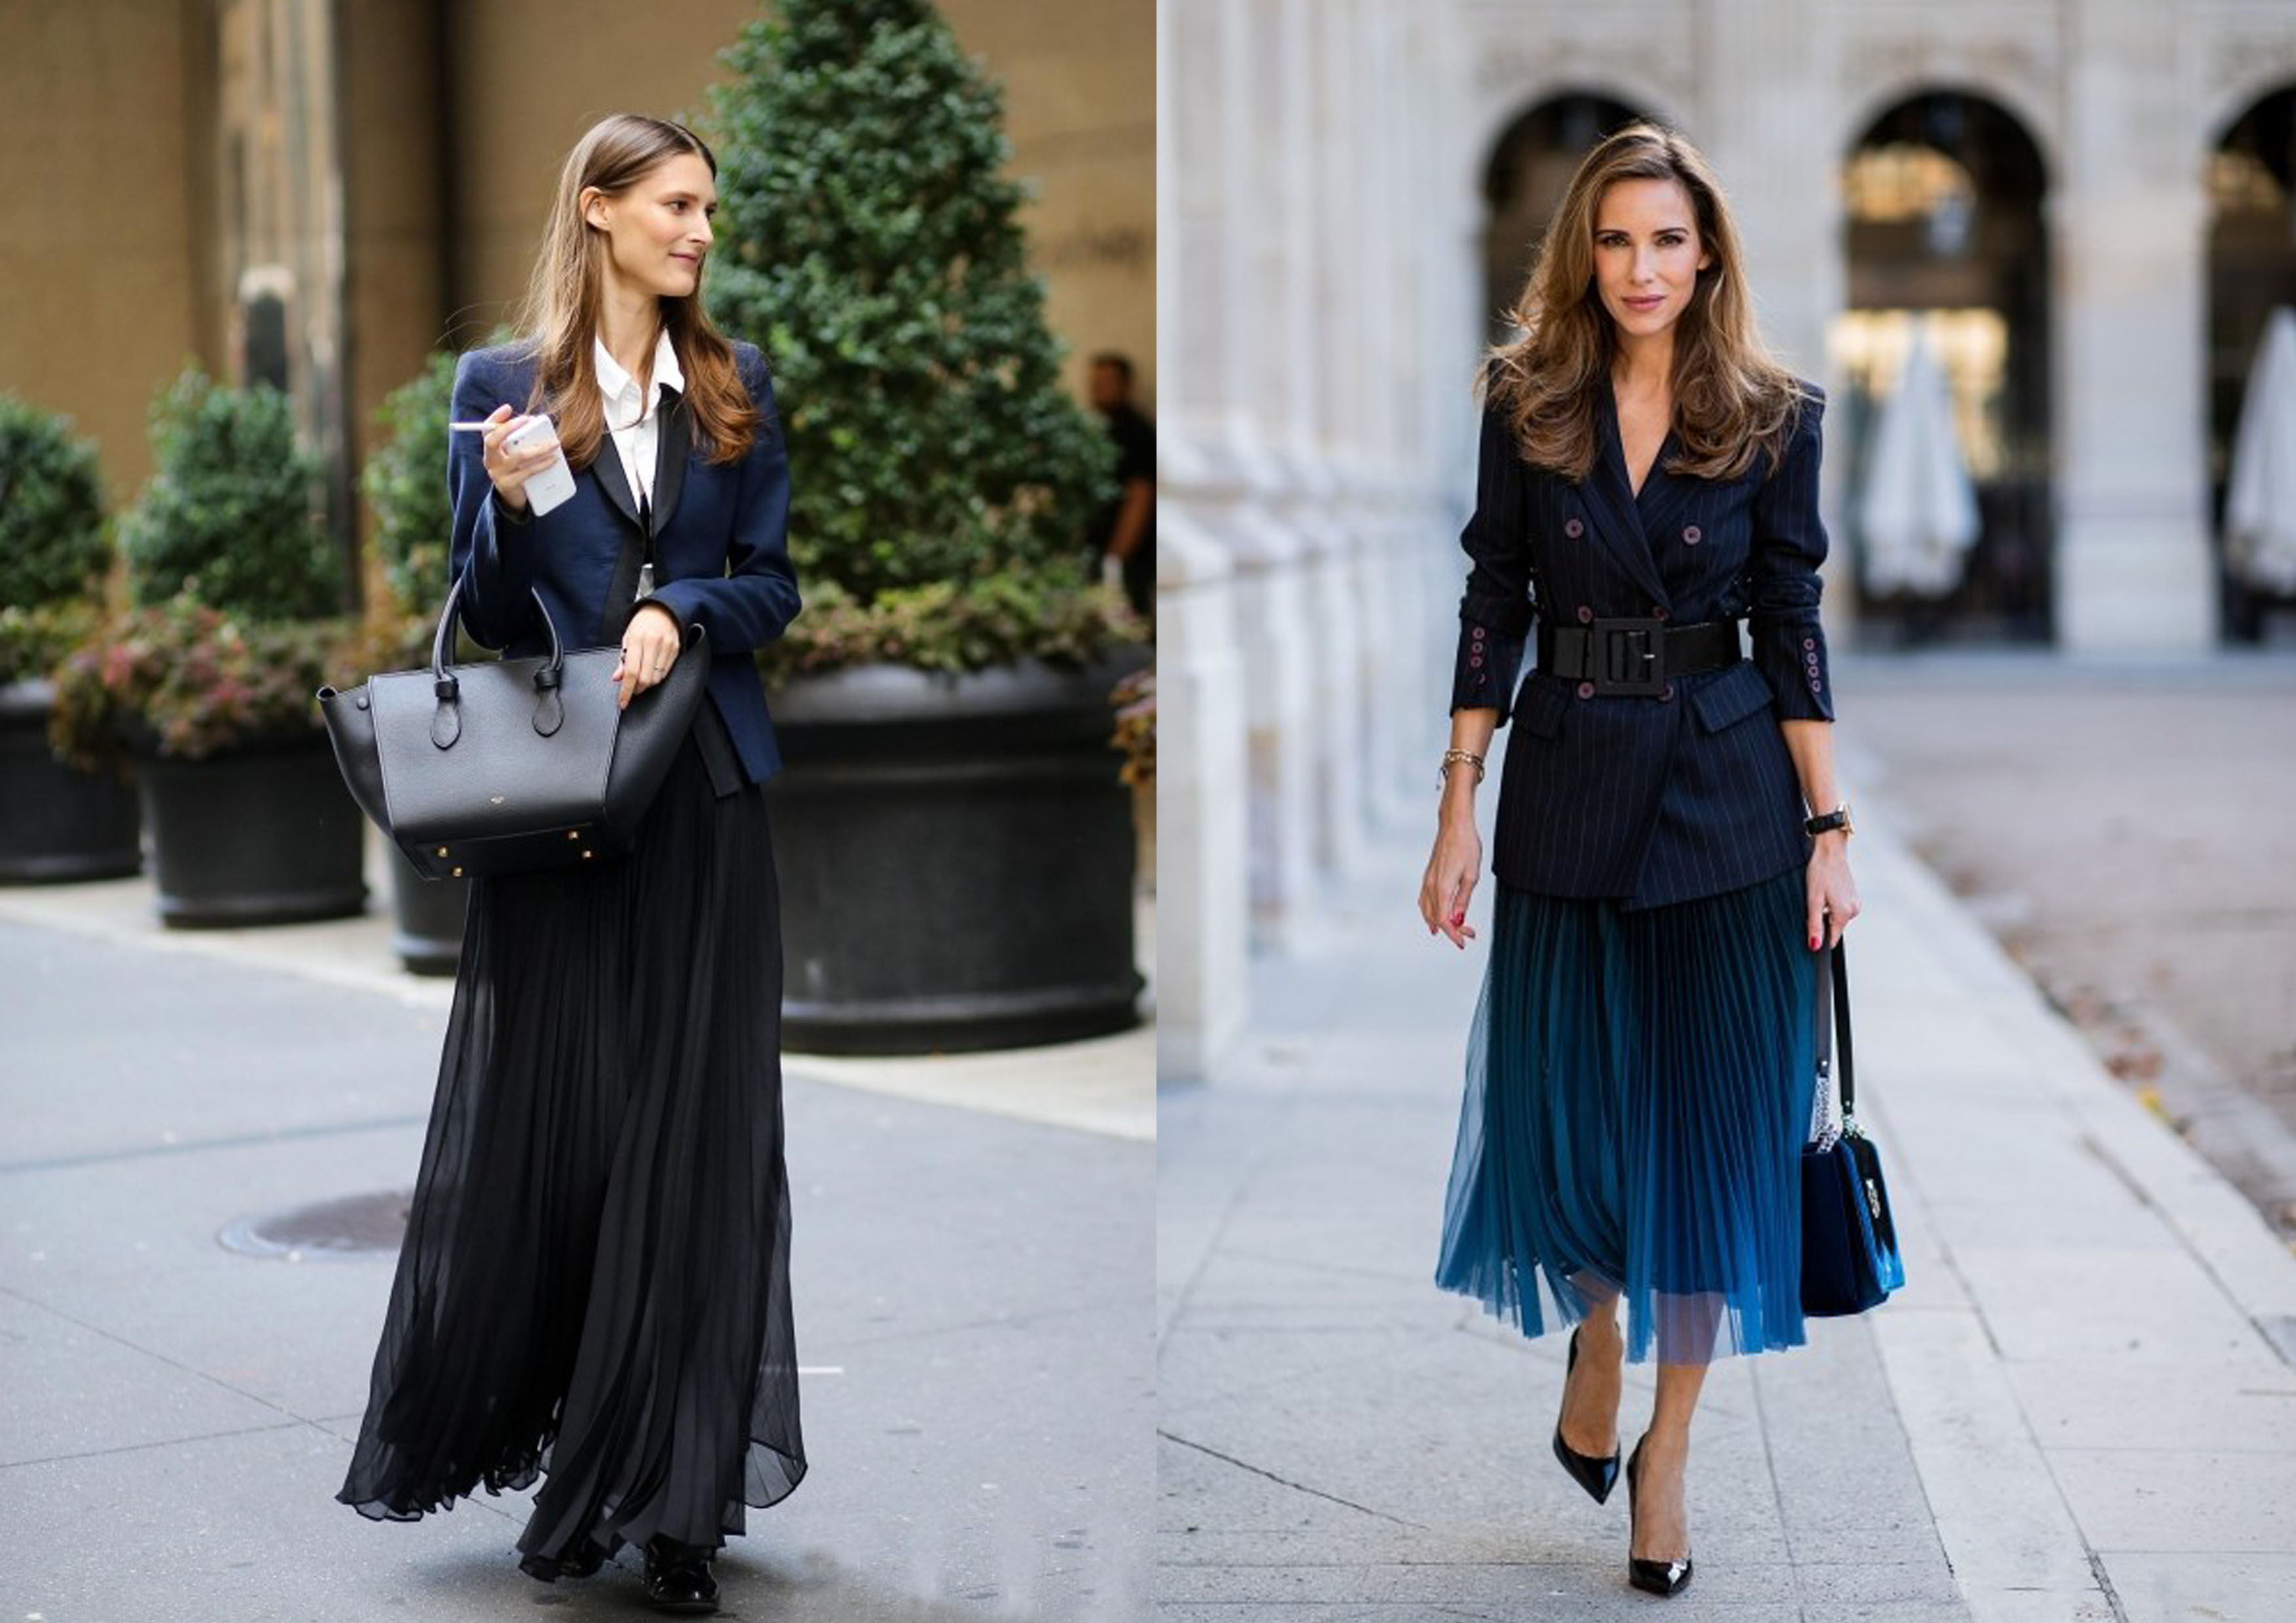 颜色上推荐组合:深蓝西装 白色衬衣 黑色纱裙,包包和鞋子黑色就好